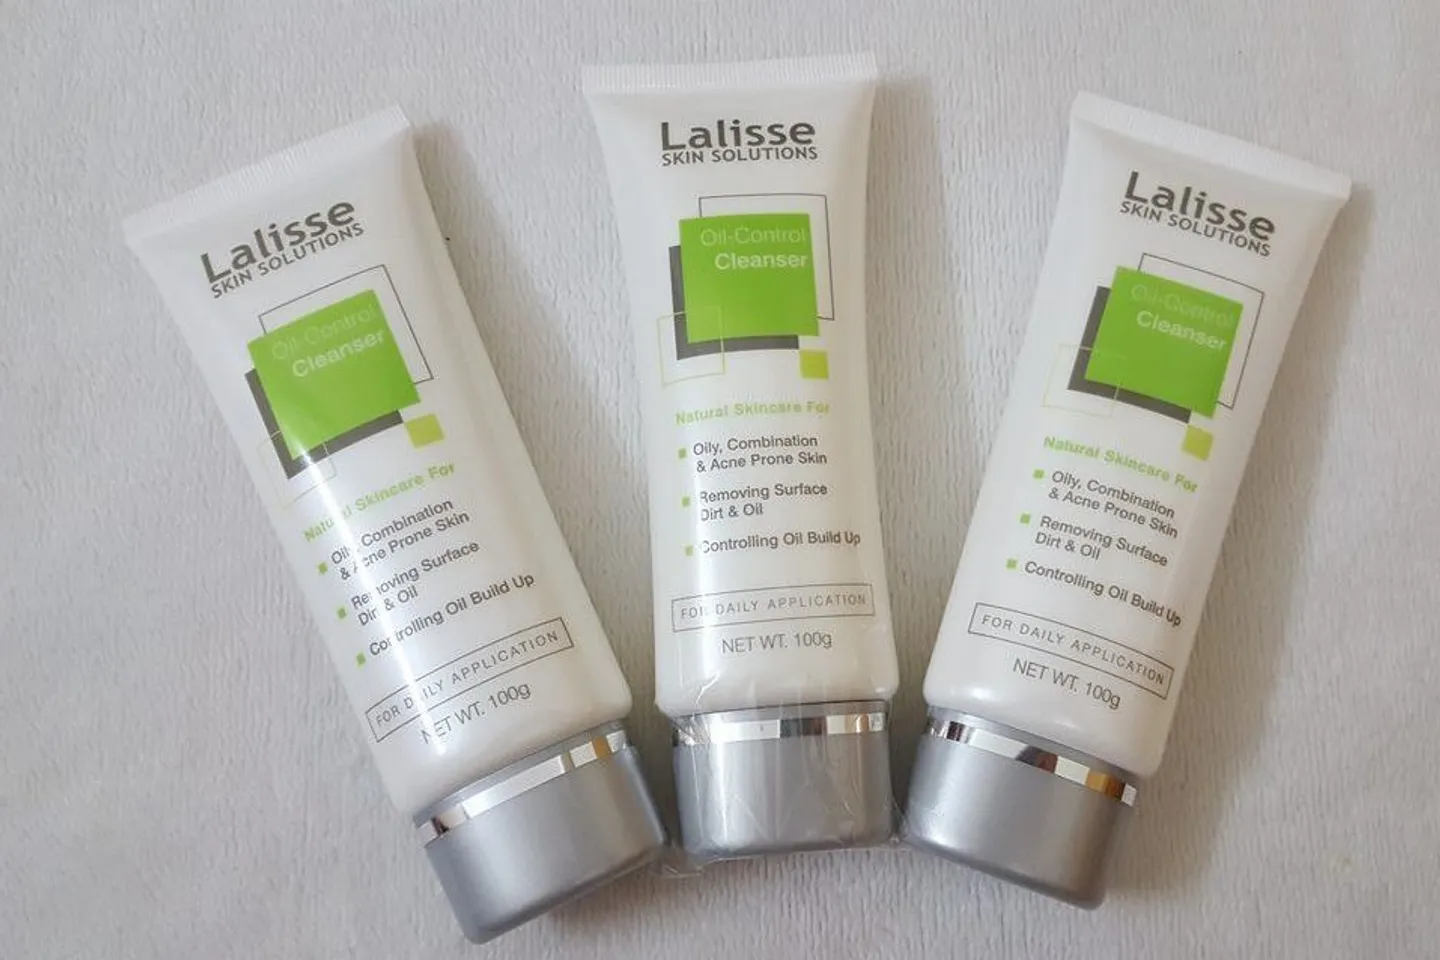 Lalisse Oil-Control Cleanser không làm khô da hay gây kích ứng da như sữa rửa mặt truyền thống